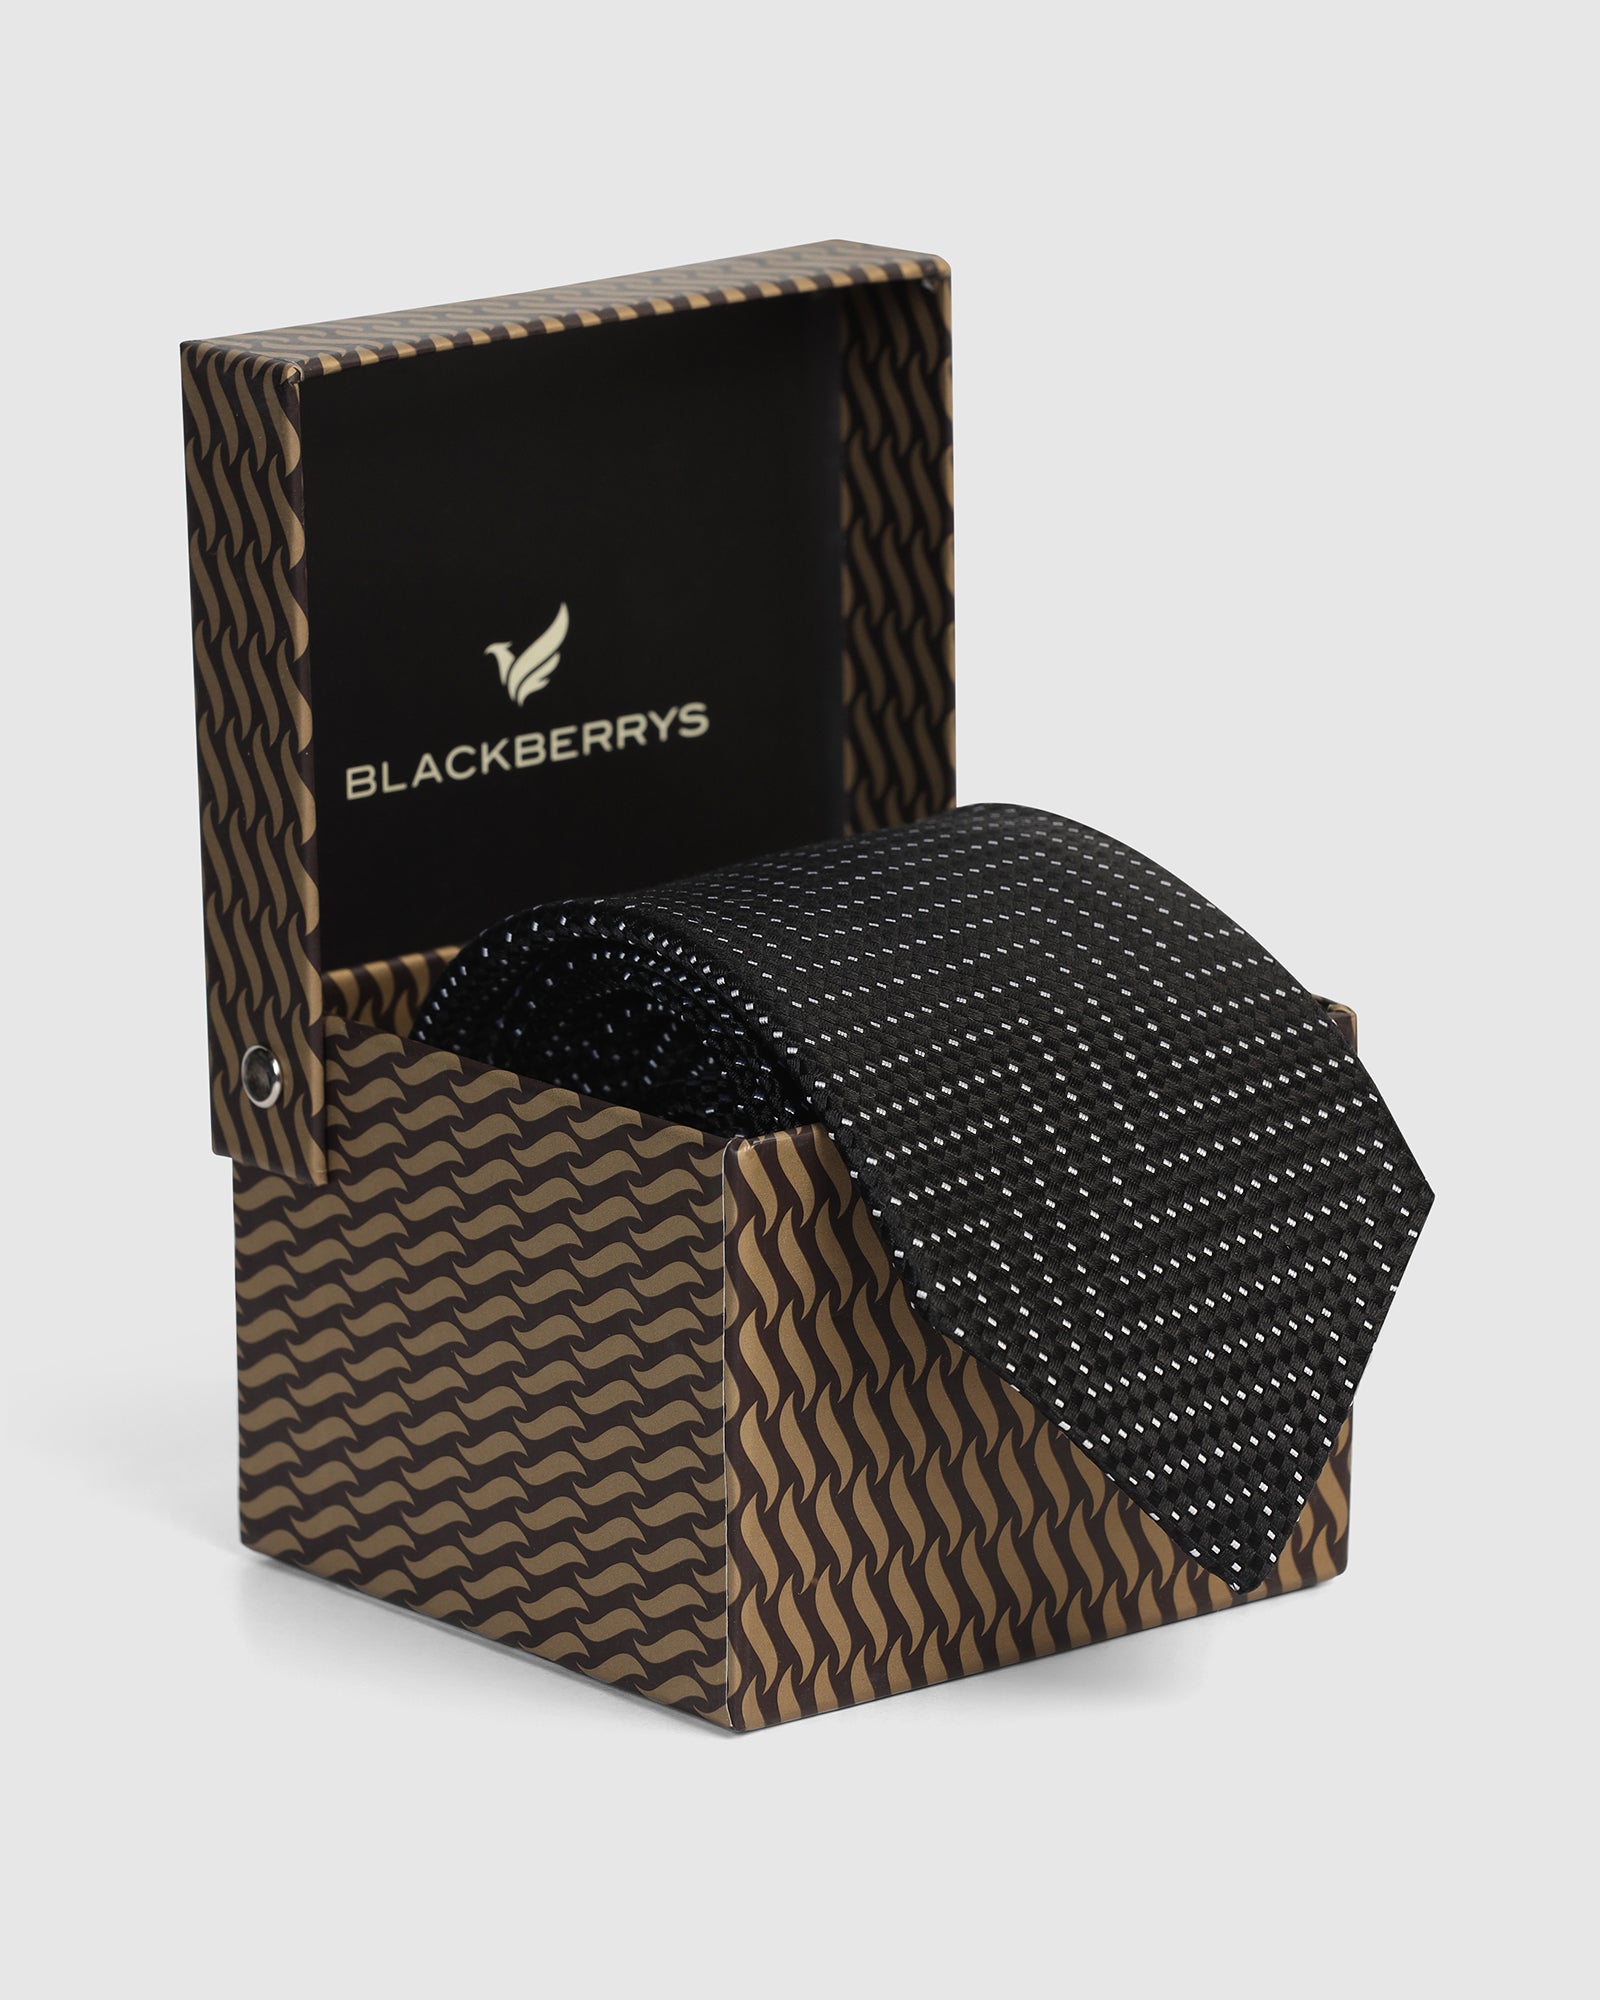 Silk Jet Black Printed Tie - Valdimir